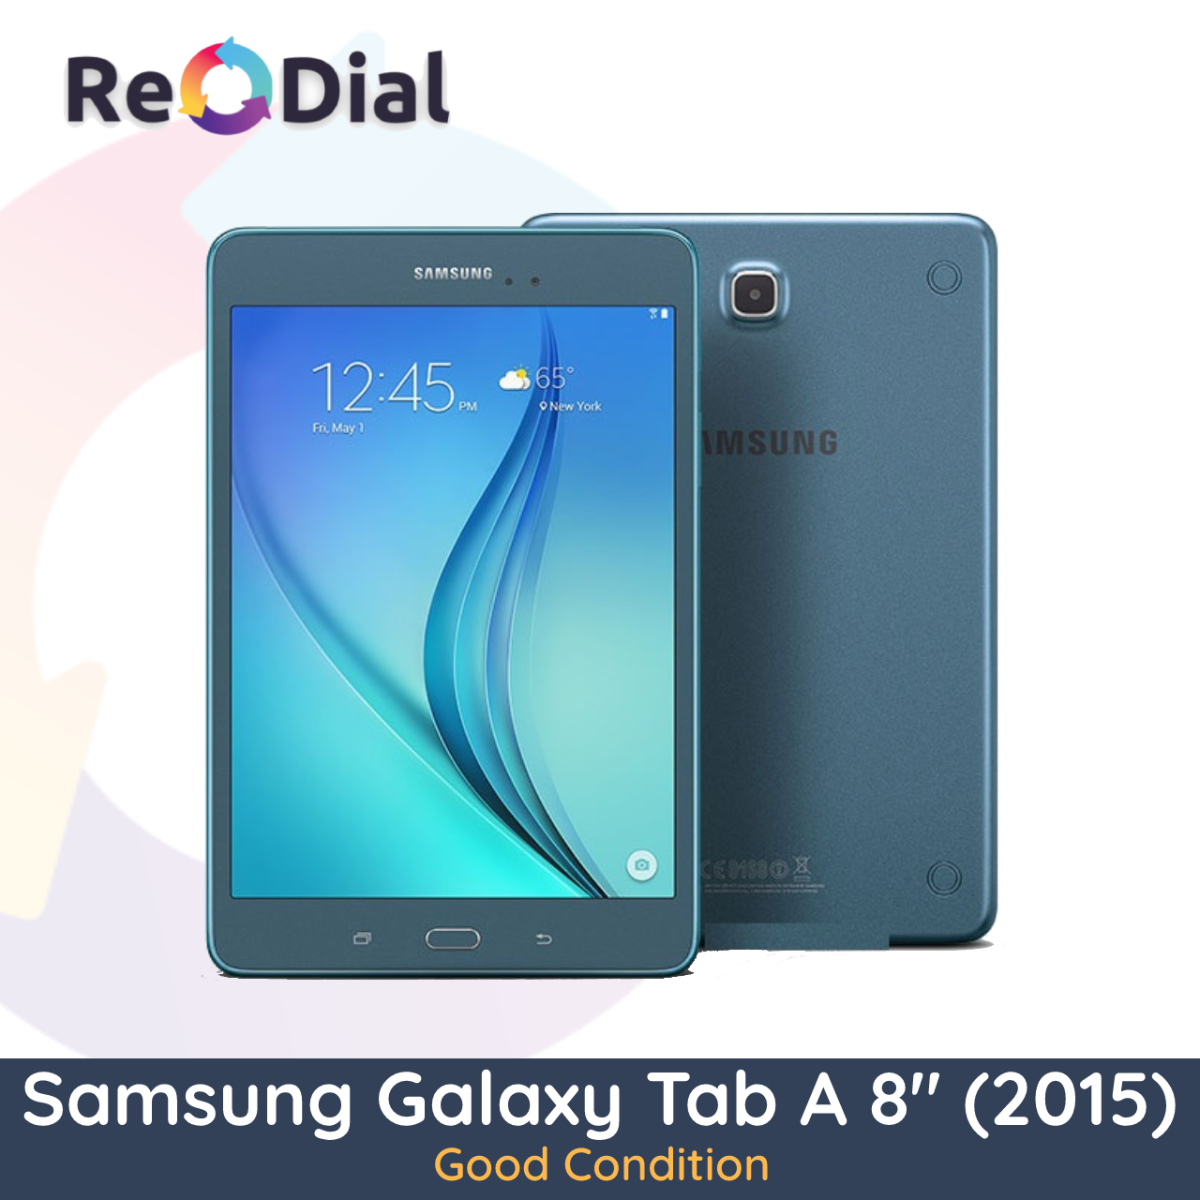 Samsung Galaxy Tab A 8.0" (T350 / 2015) WiFi - Good Condition